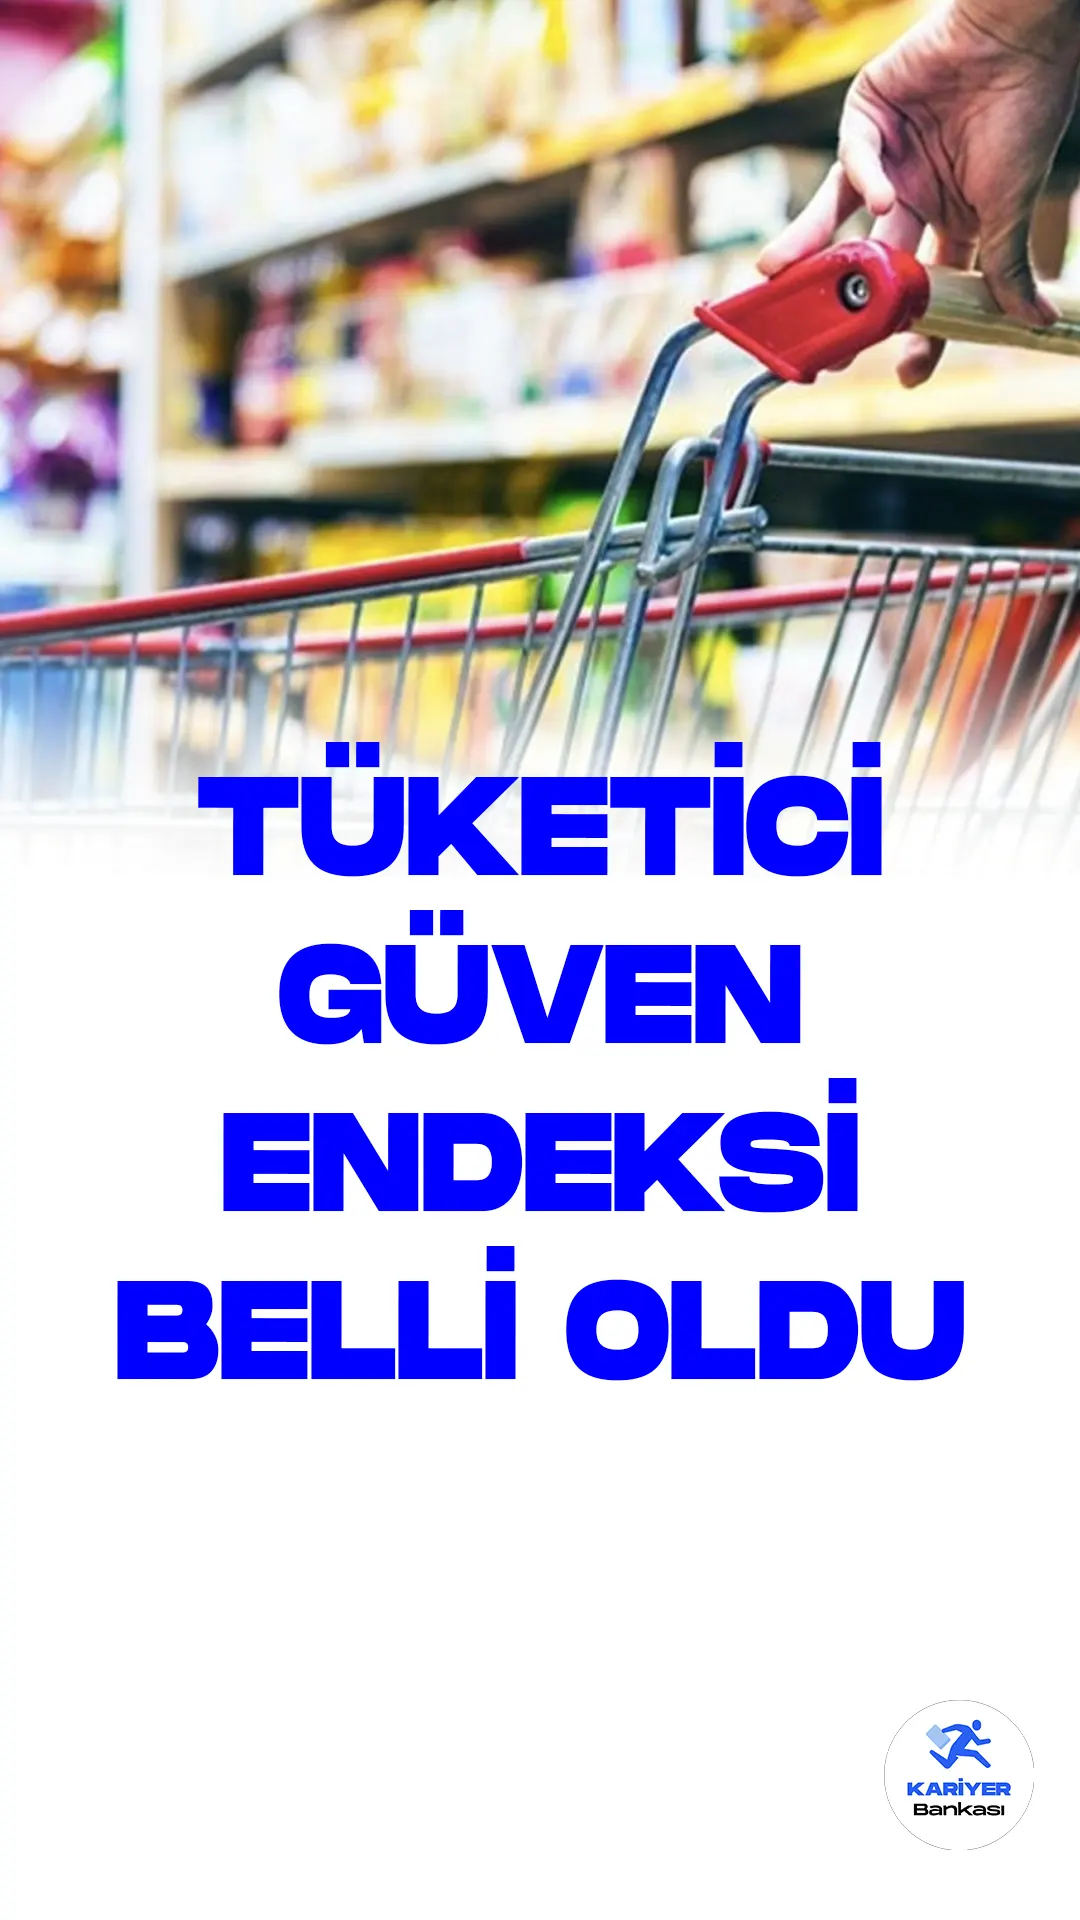 Tüketici Güven Endeksi Temmuz Ayında Yüzde 5,9 Azalarak 80,1 Oldu.Türkiye İstatistik Kurumu (TÜİK), tüketici güven endeksi verilerini temmuz ayına ilişkin olarak açıkladı. TÜİK ve Türkiye Cumhuriyet Merkez Bankası işbirliğiyle yürütülen "Tüketici Eğilim Anketi" sonuçlarından elde edilen mevsim etkilerinden arındırılmış tüketici güven endeksi, geçen aya göre temmuzda yüzde 5,9 oranında azalarak 80,1 değerine geriledi.